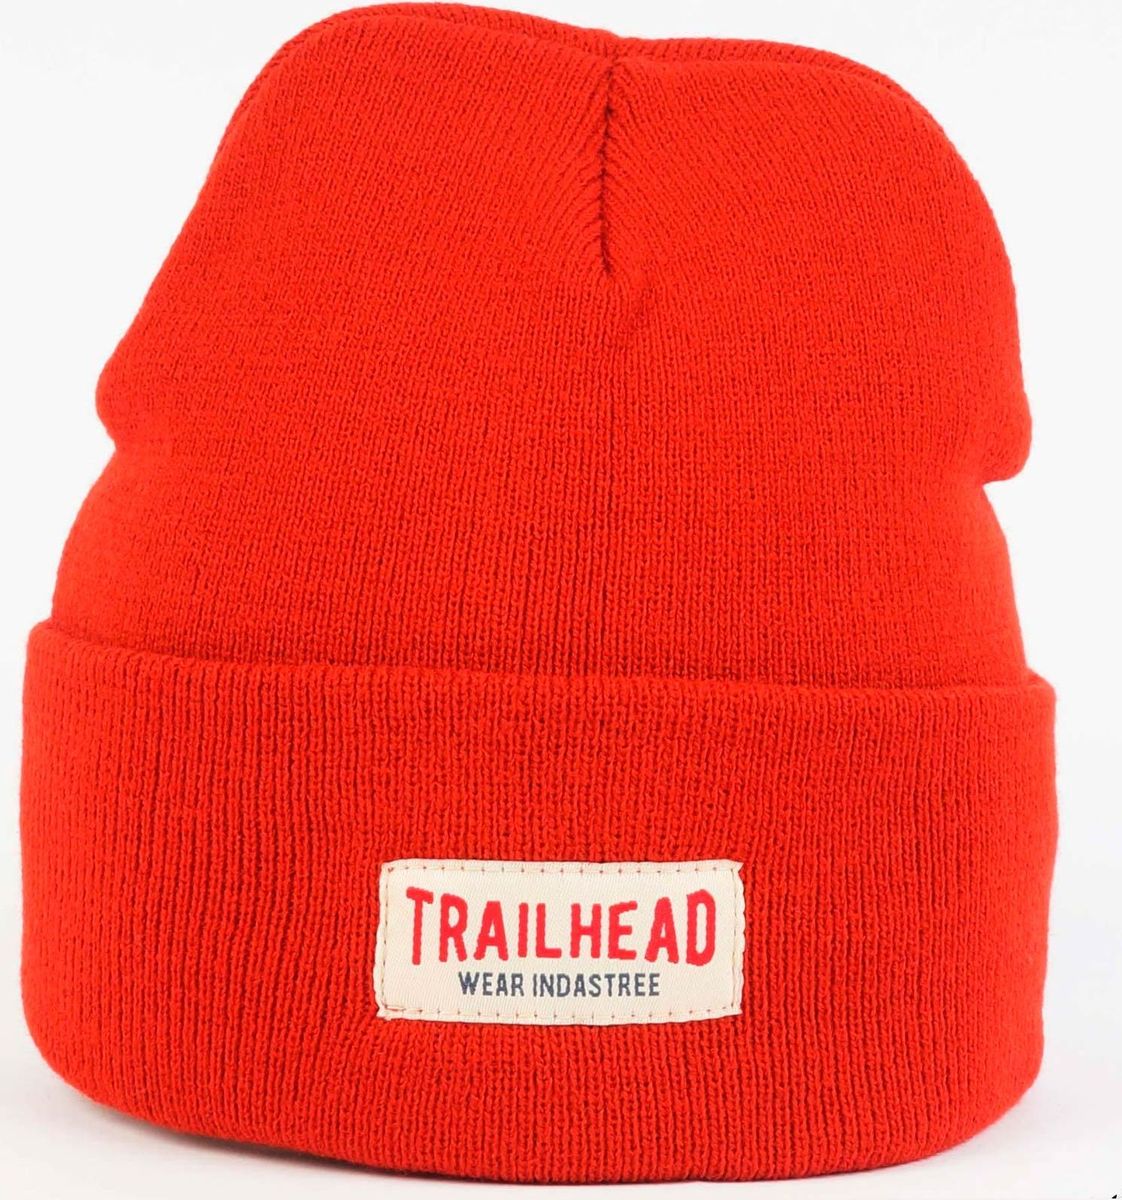 Hats 18. Trailhead шапка красная. Indastree Trailhead шапка зимняя. Кепка Trailhead. Indastree Trailhead шапка зимняя зелёная.